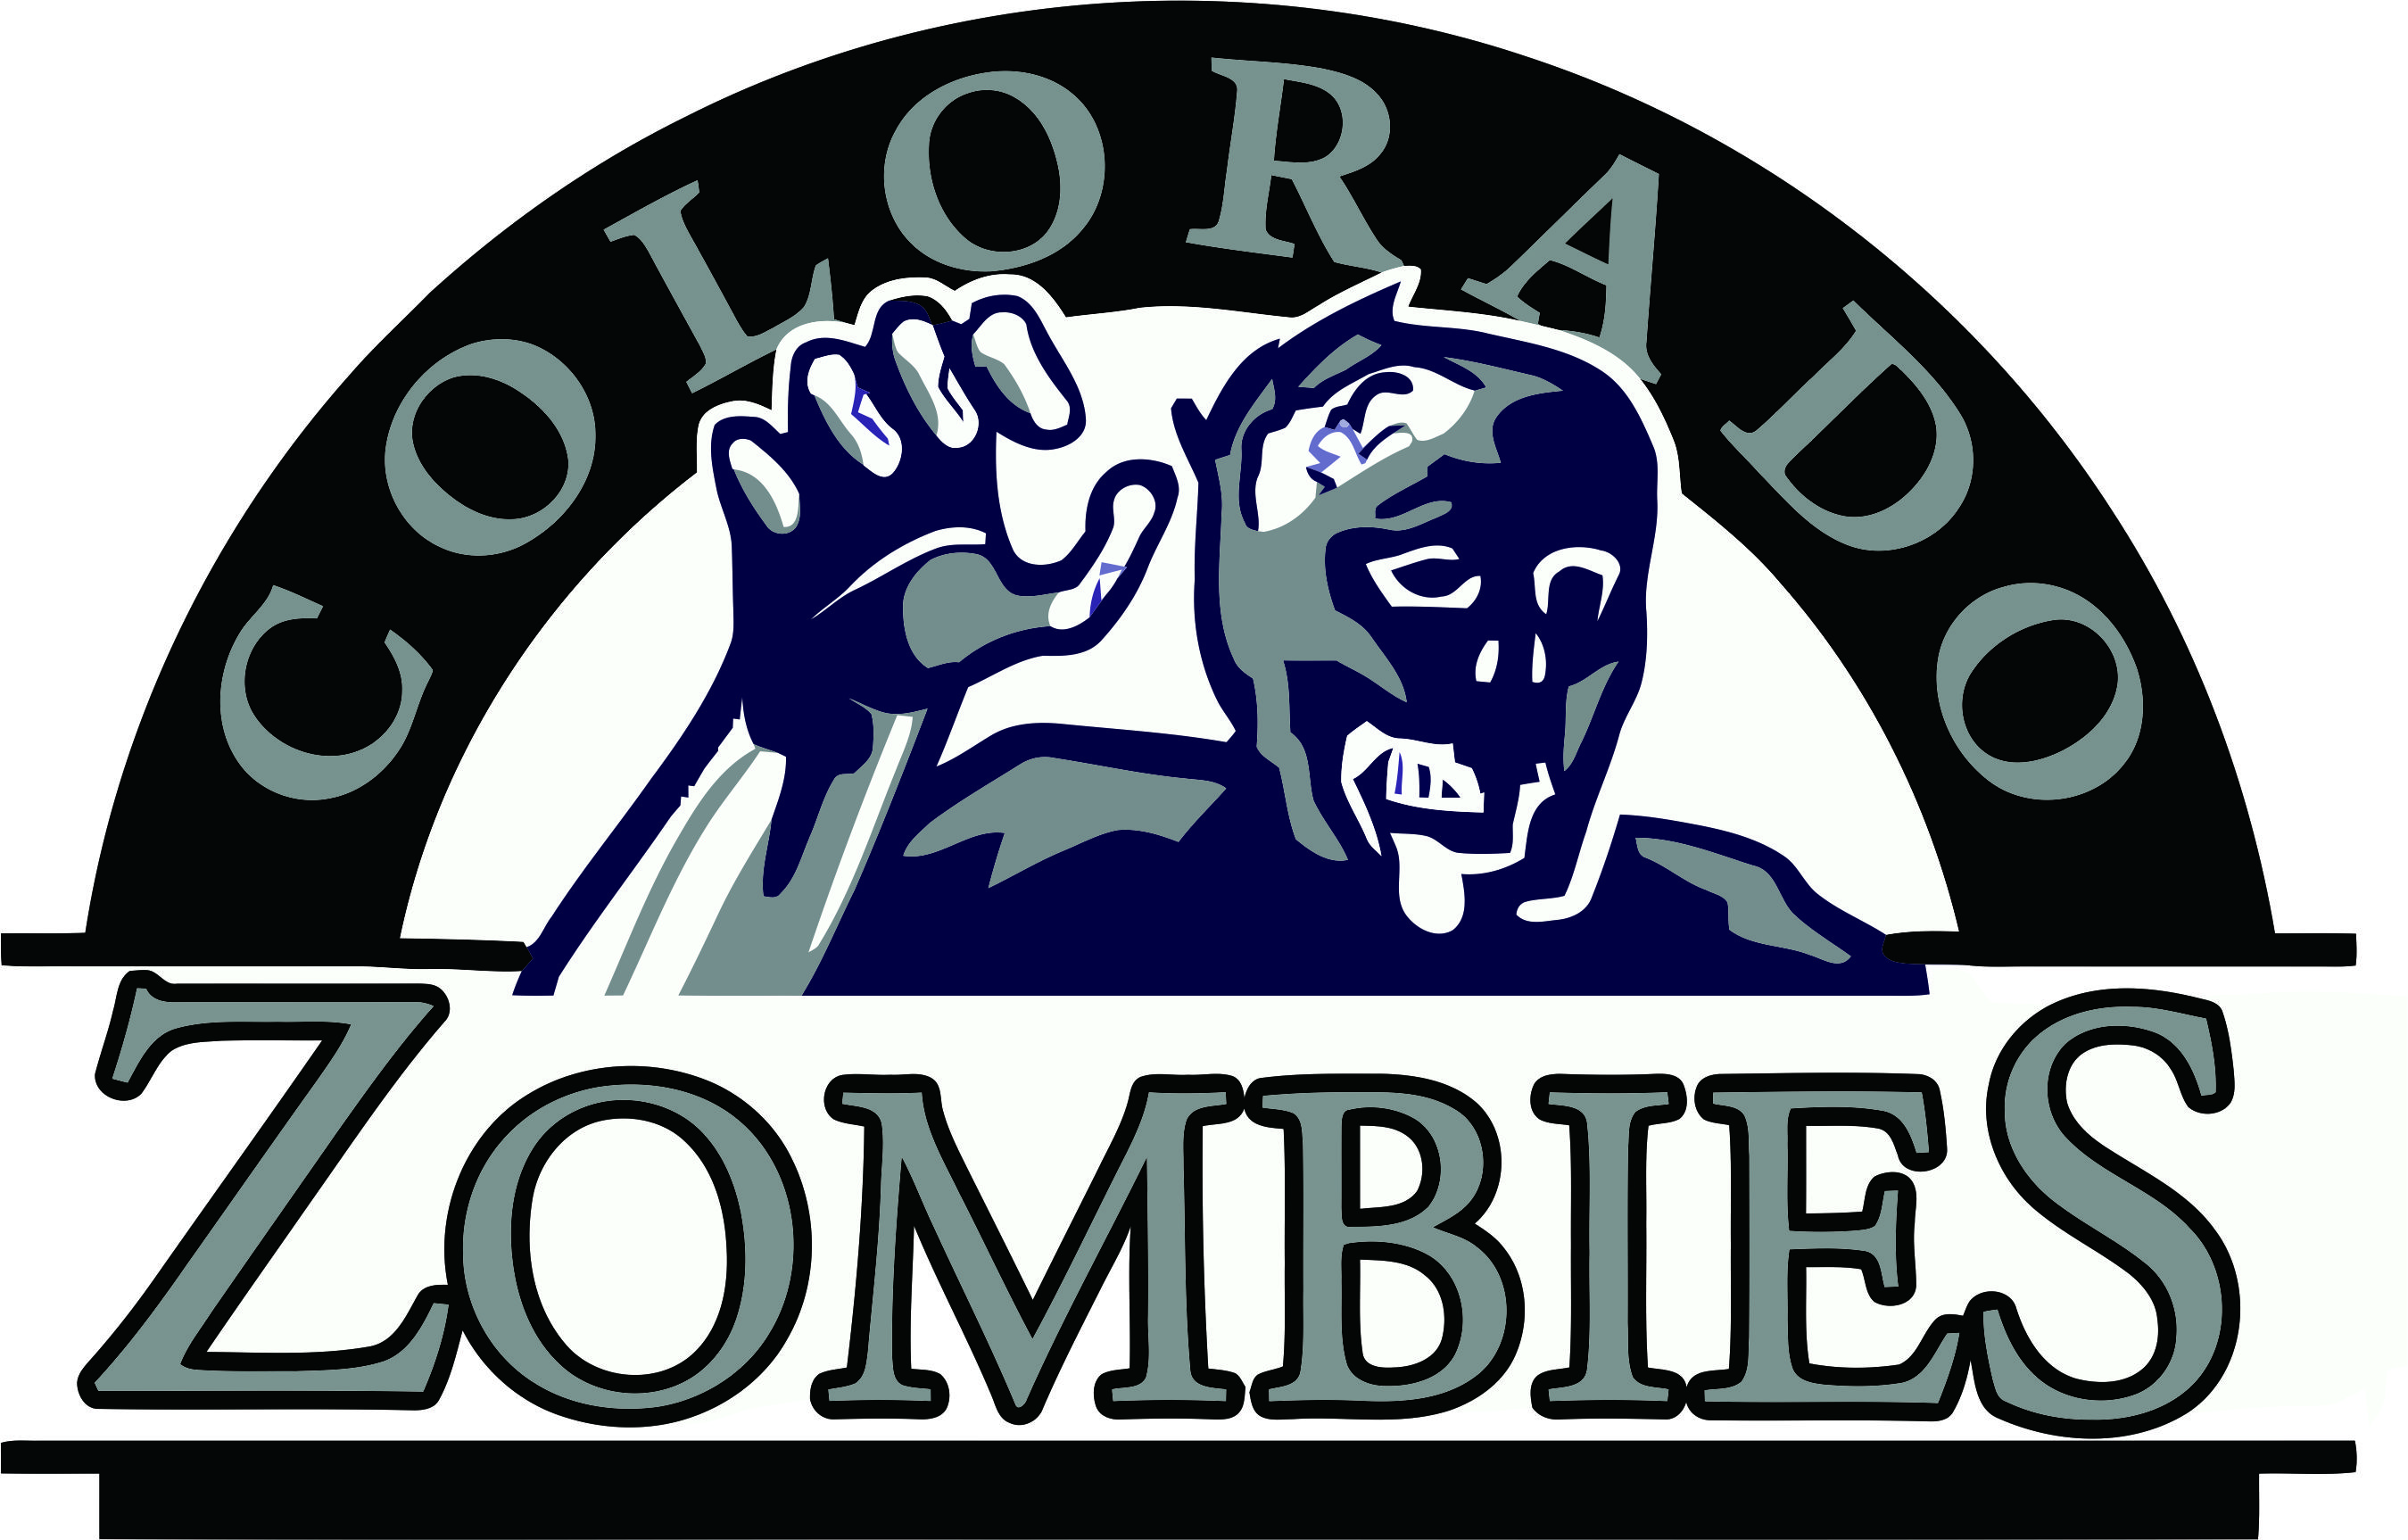 Colorado Rockies Zombies Logo DIY iron on transfer (heat transfer)